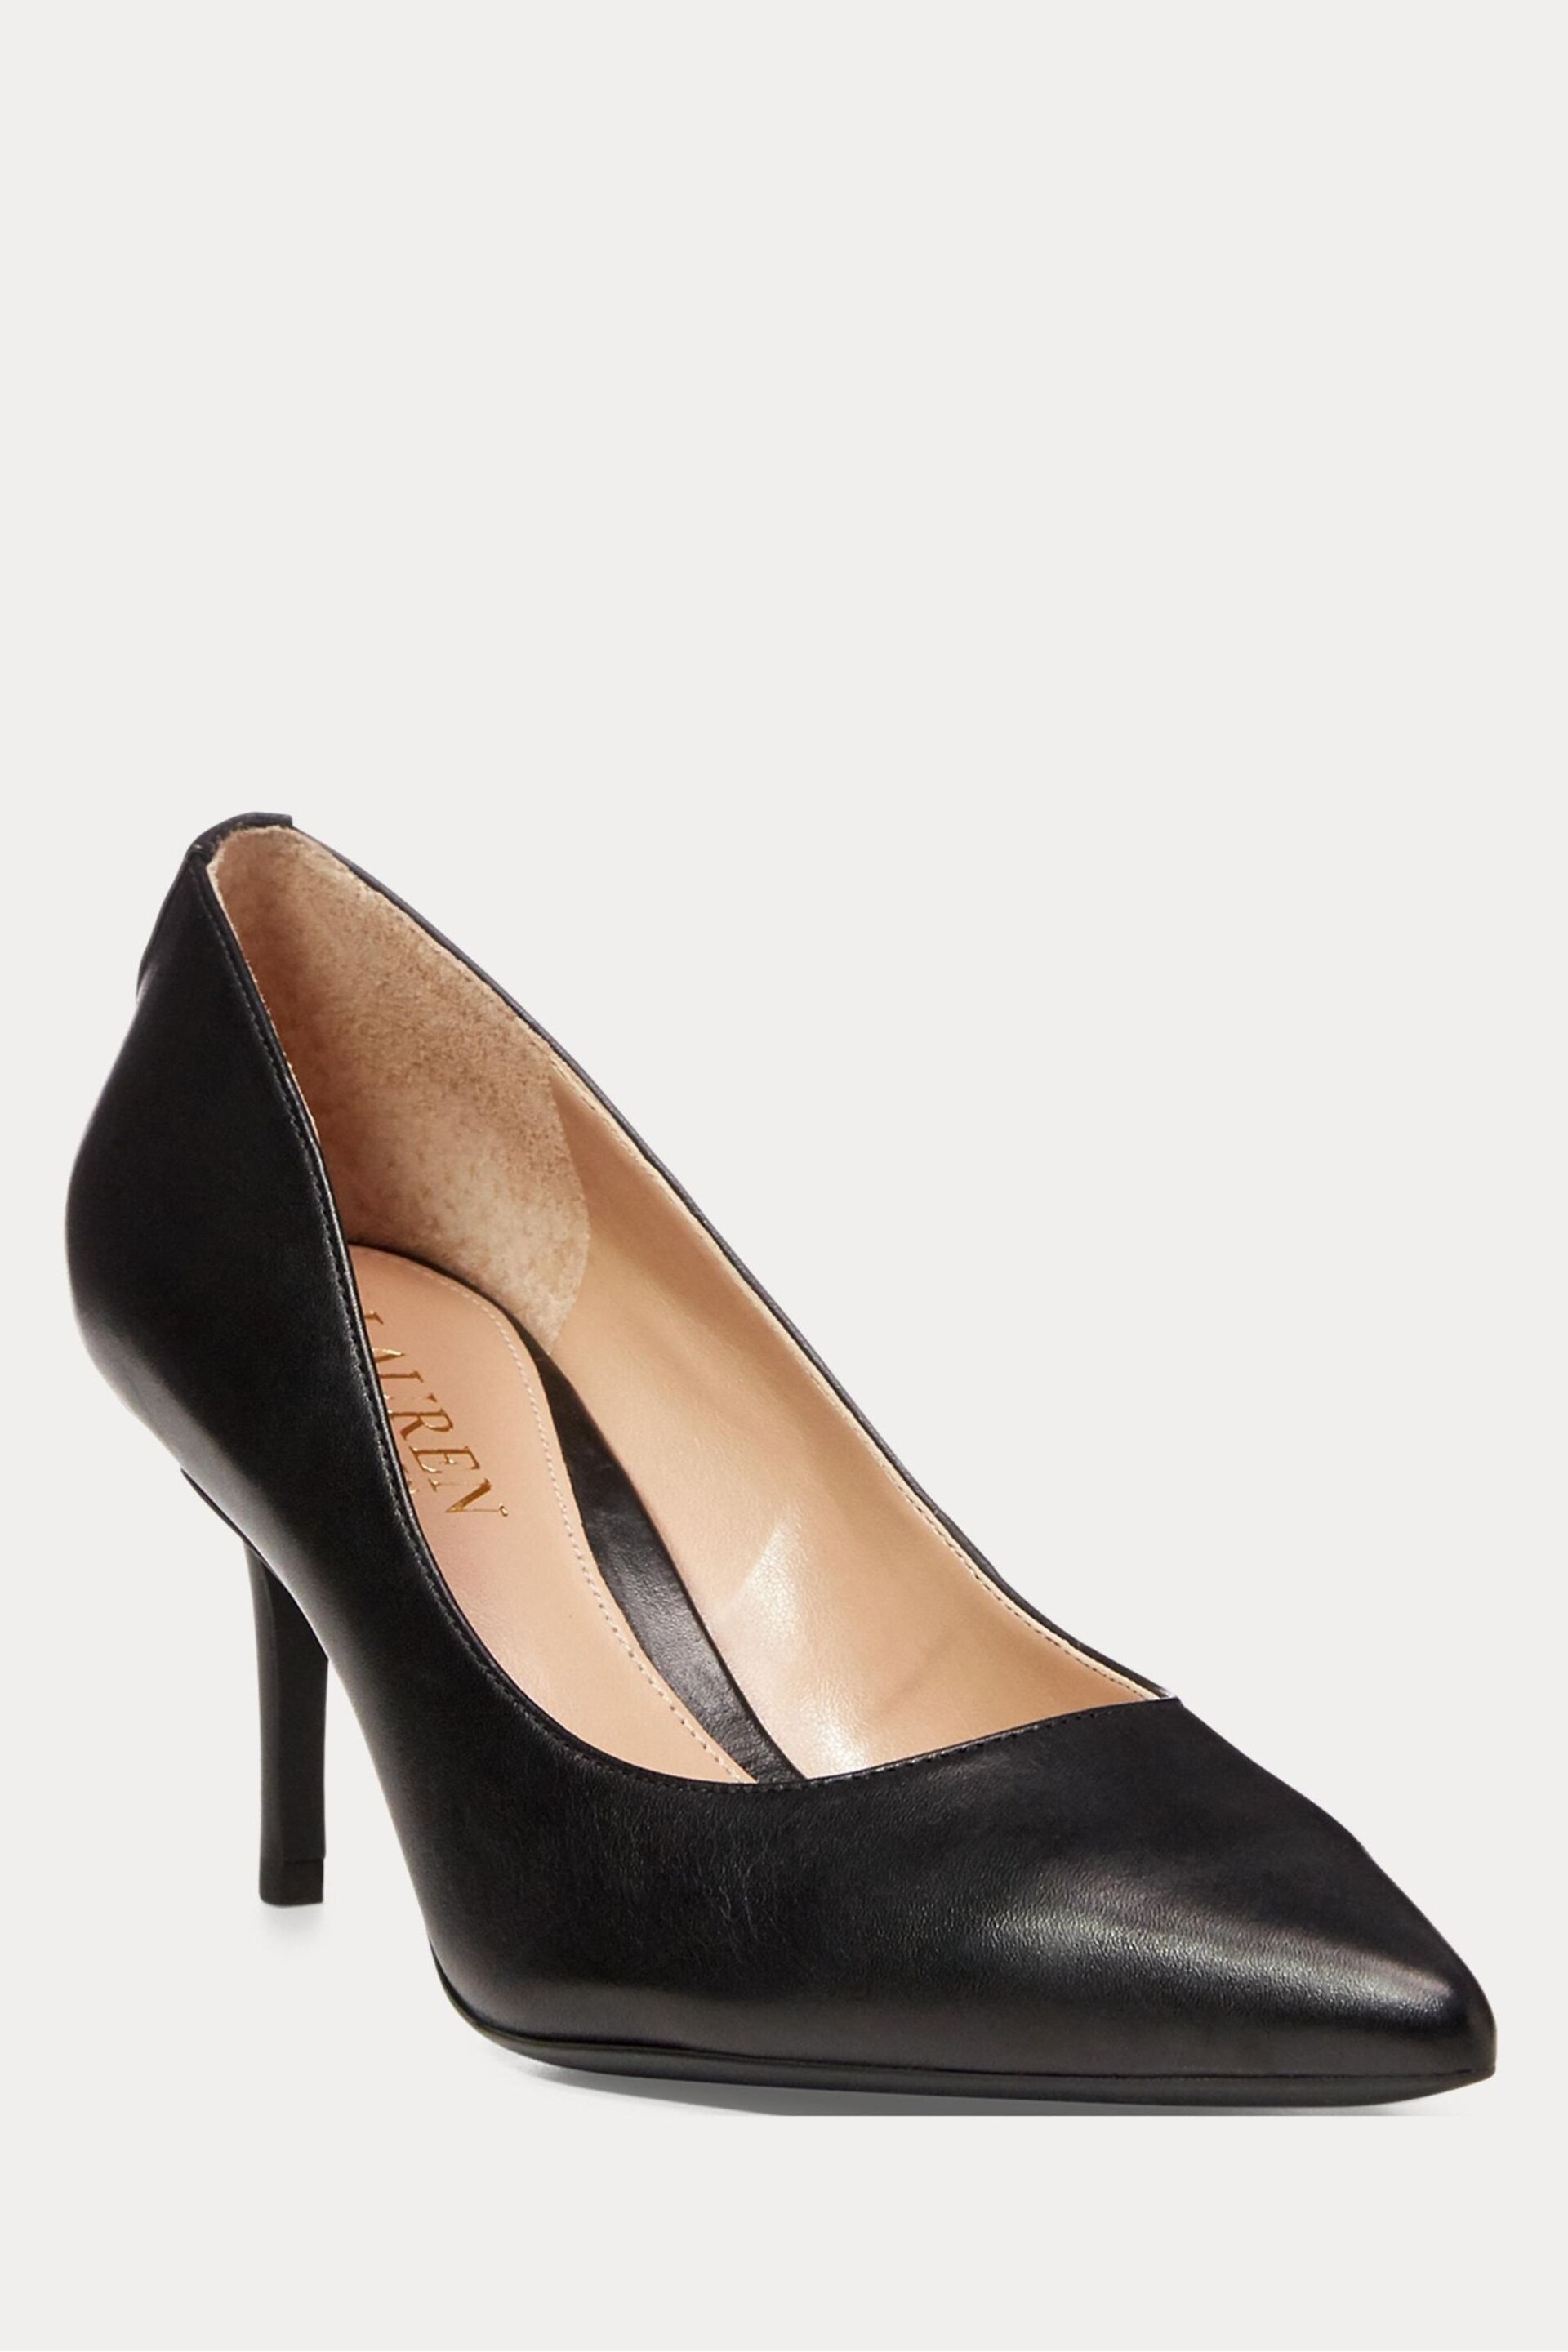 'Lauren Ralph Lauren Lanette Leather Court Heels - Image 1 of 4